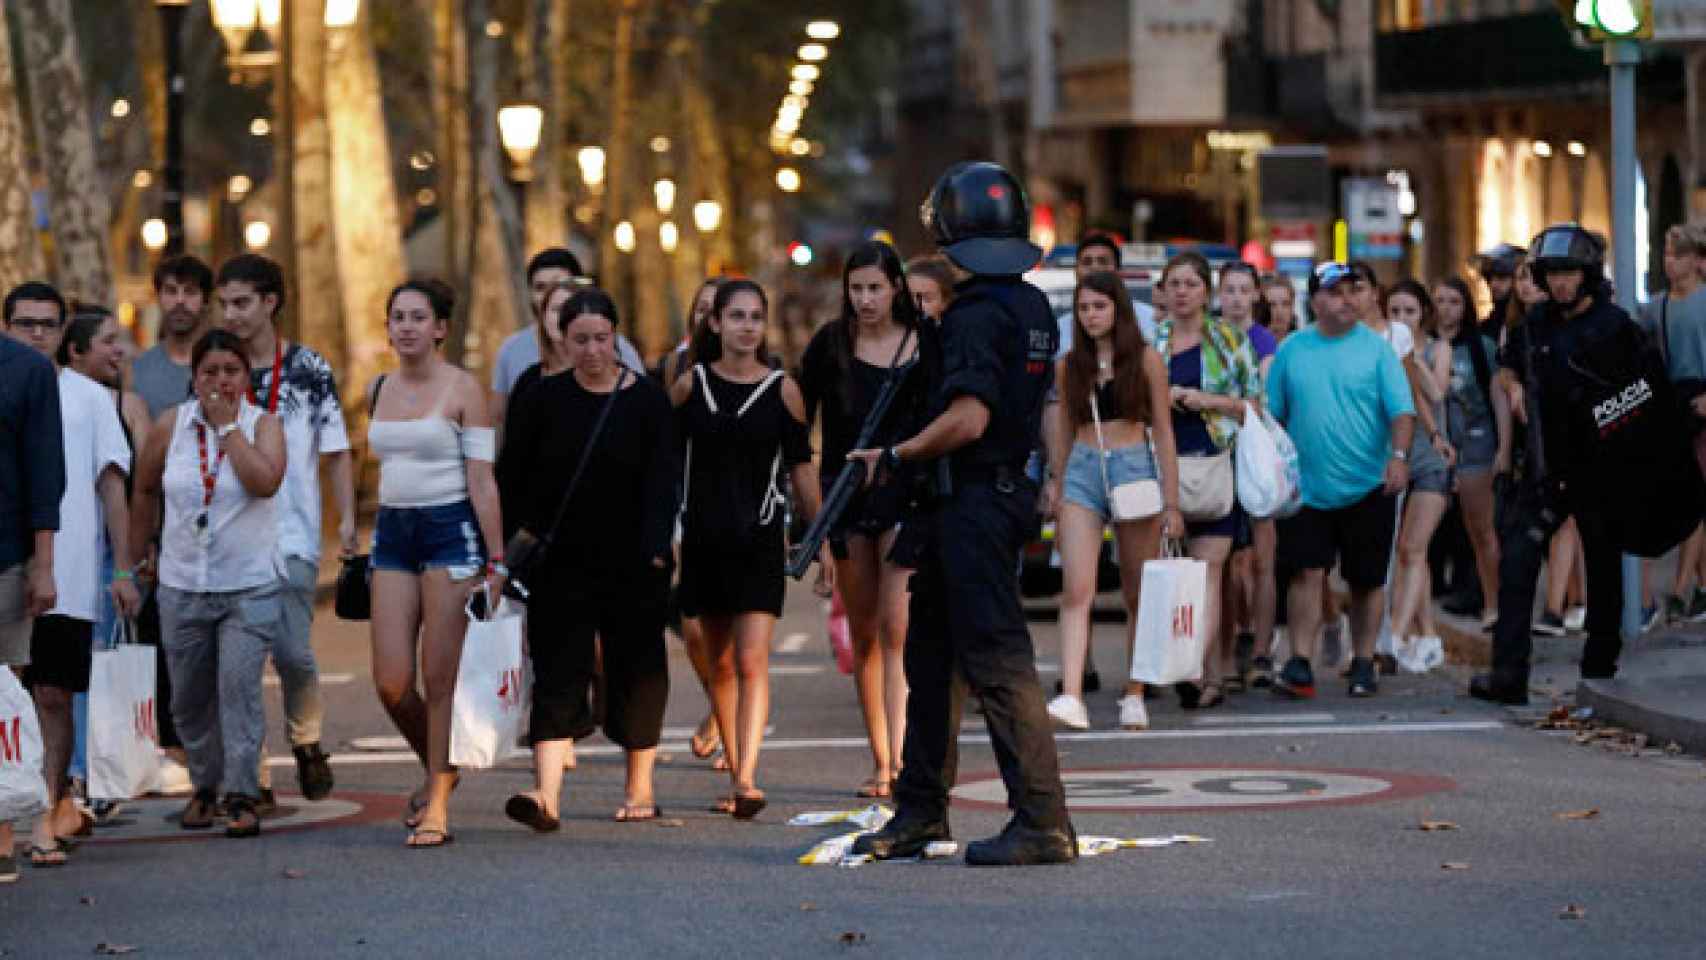 Los Mossos d'Esquadra evacúan a vecinos y turistas tras la masacre de Las Ramblas / EFE